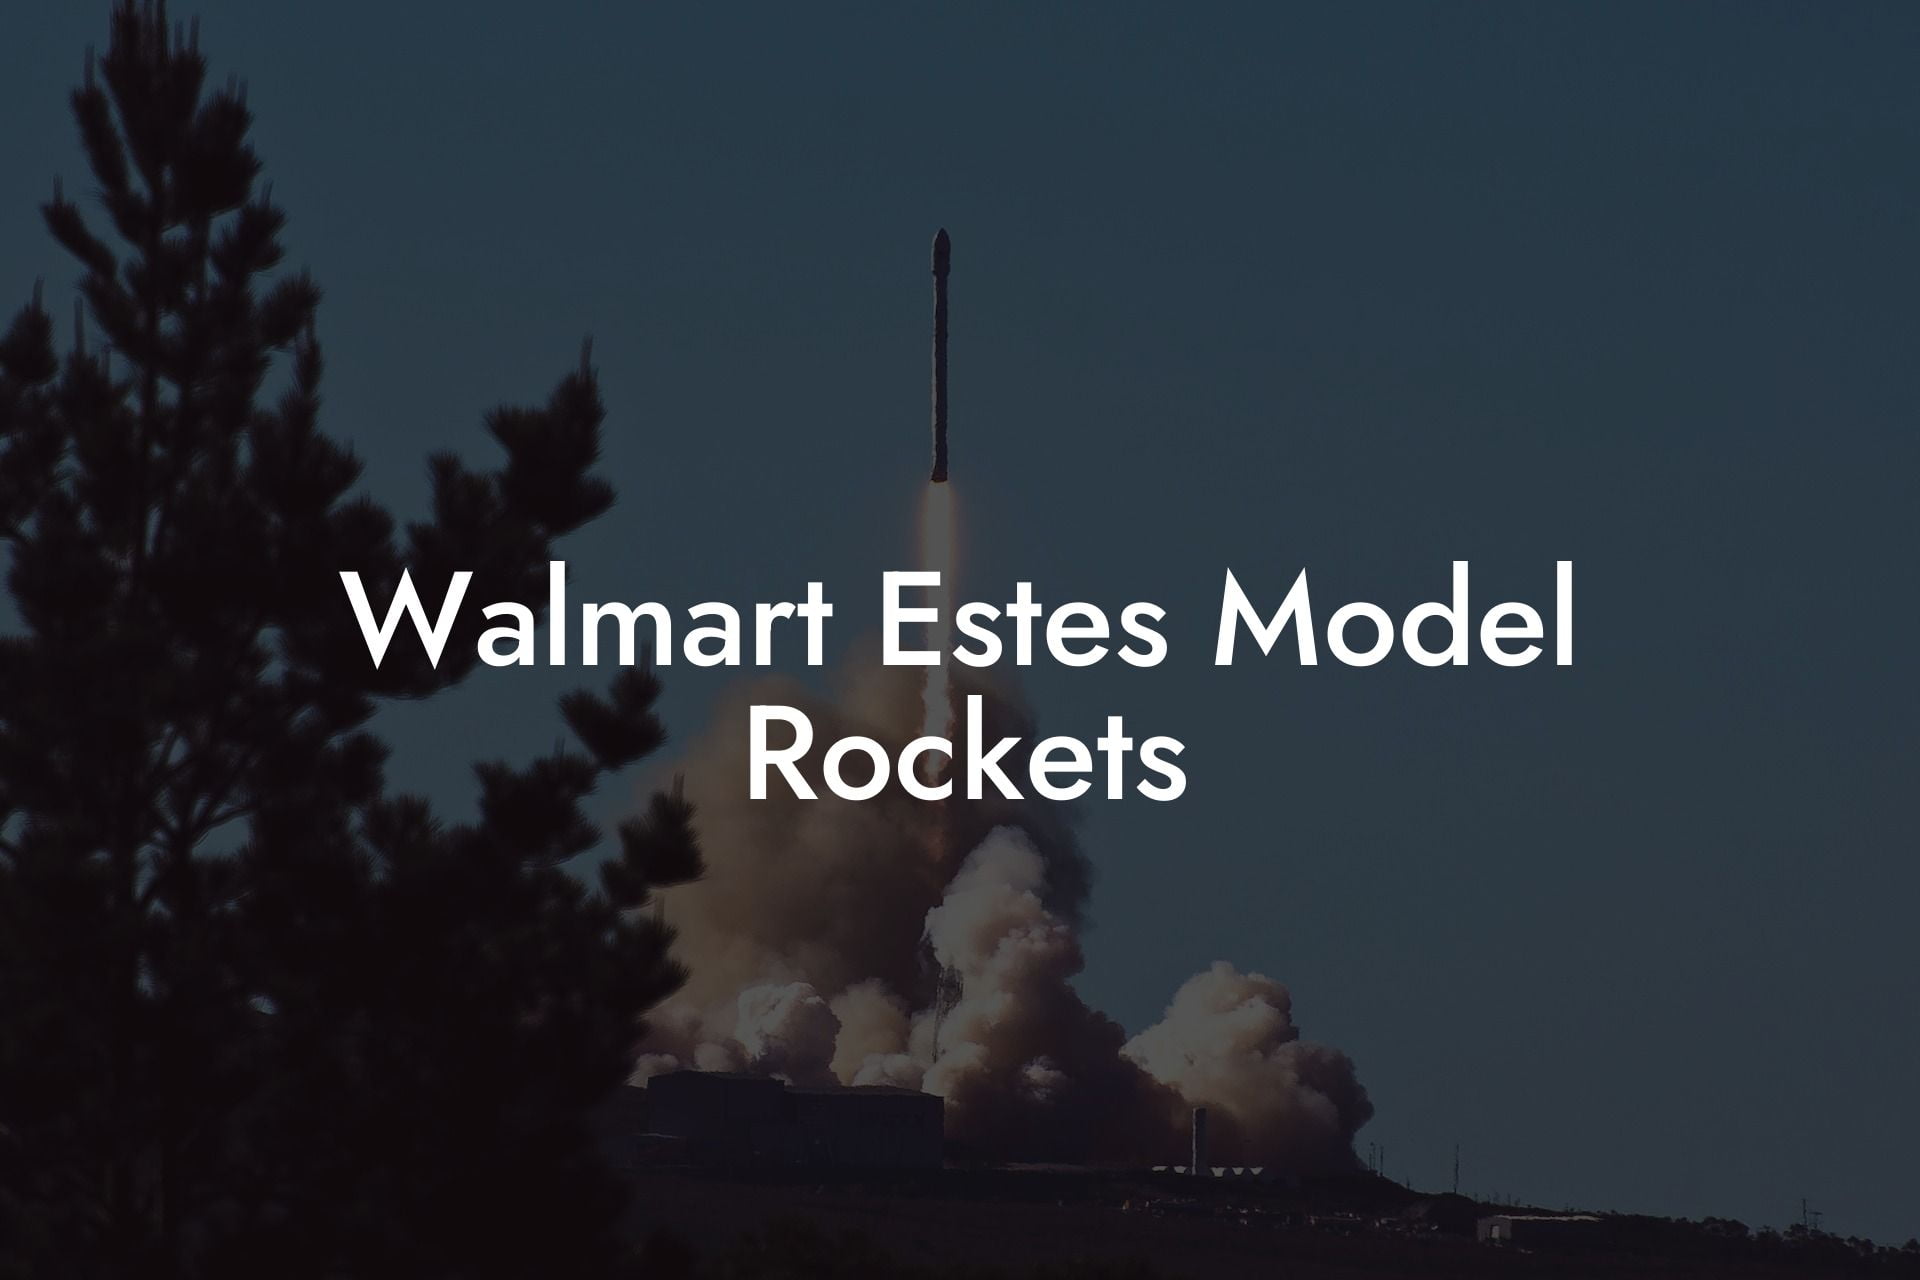 Walmart Estes Model Rockets